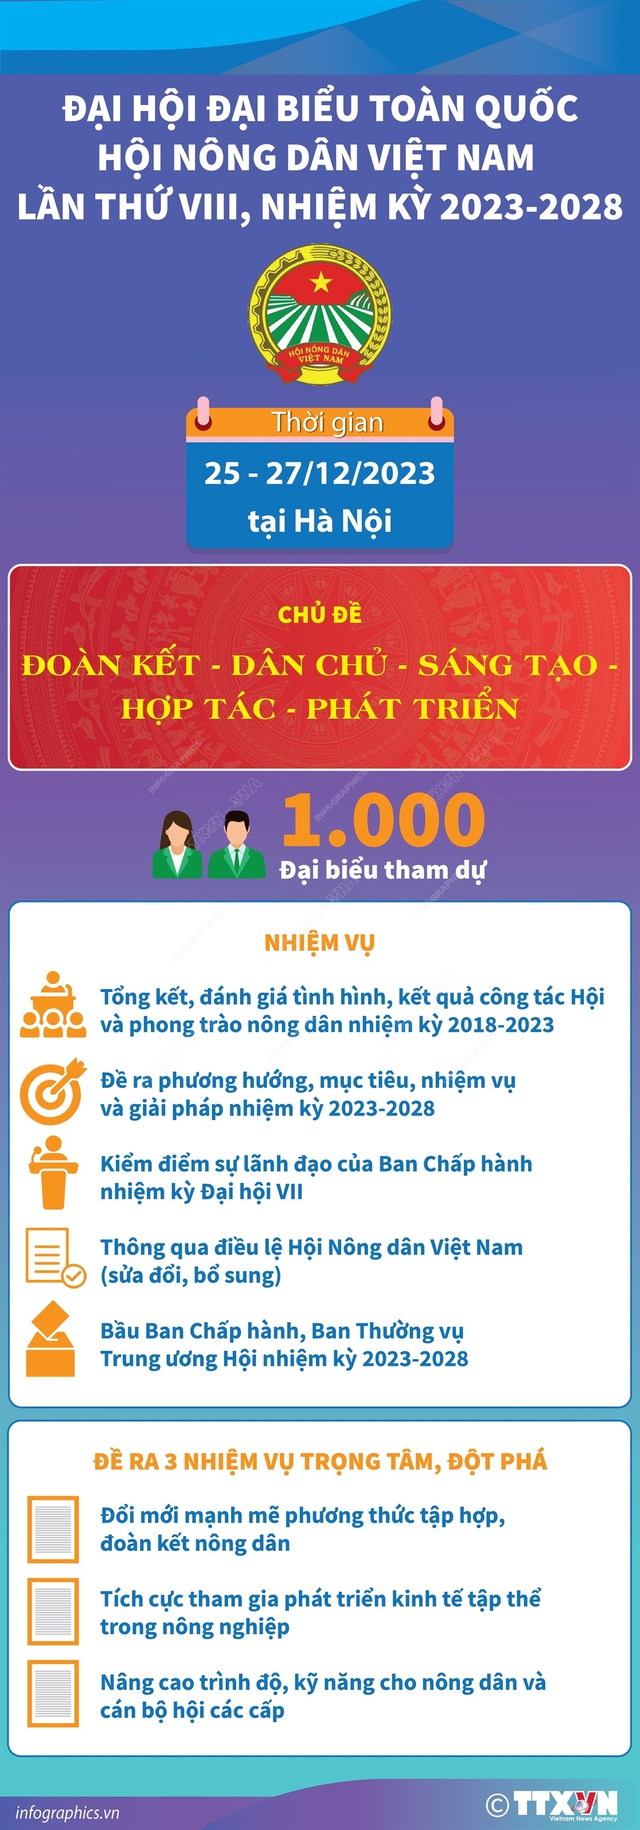 1.000 đại biểu dự Đại hội toàn quốc Hội Nông dân Việt Nam lần thứ VIII - Ảnh 1.